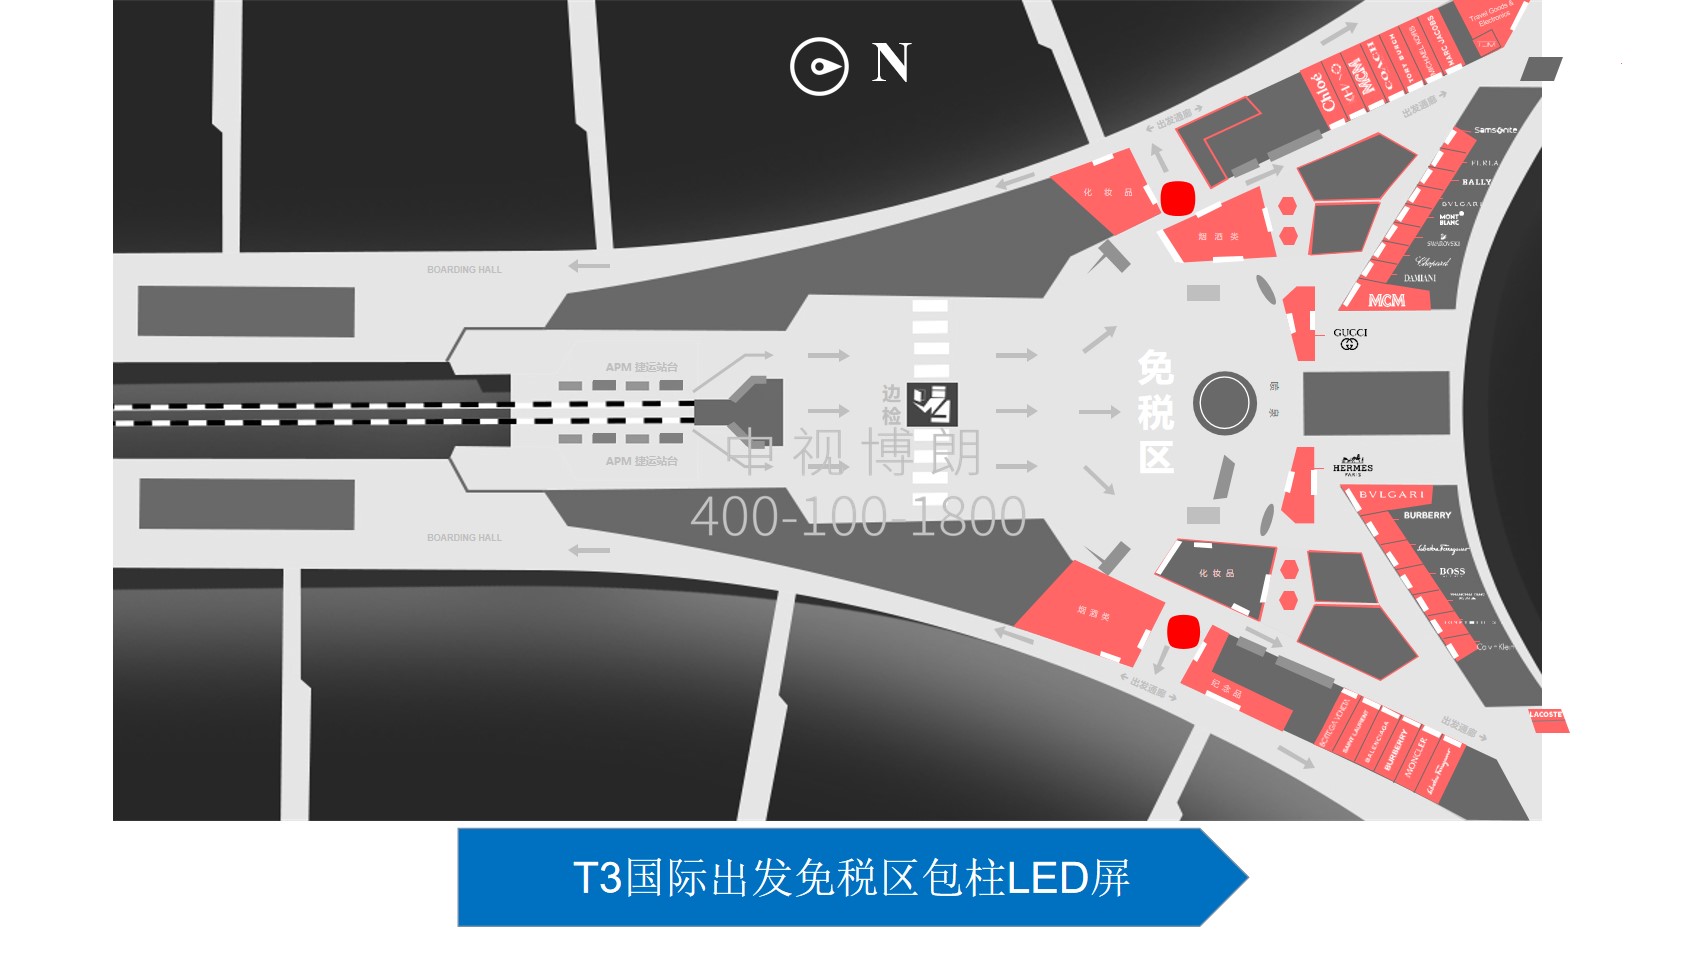 北京首都机场广告-T3国际出发免税区包柱LED屏位置图